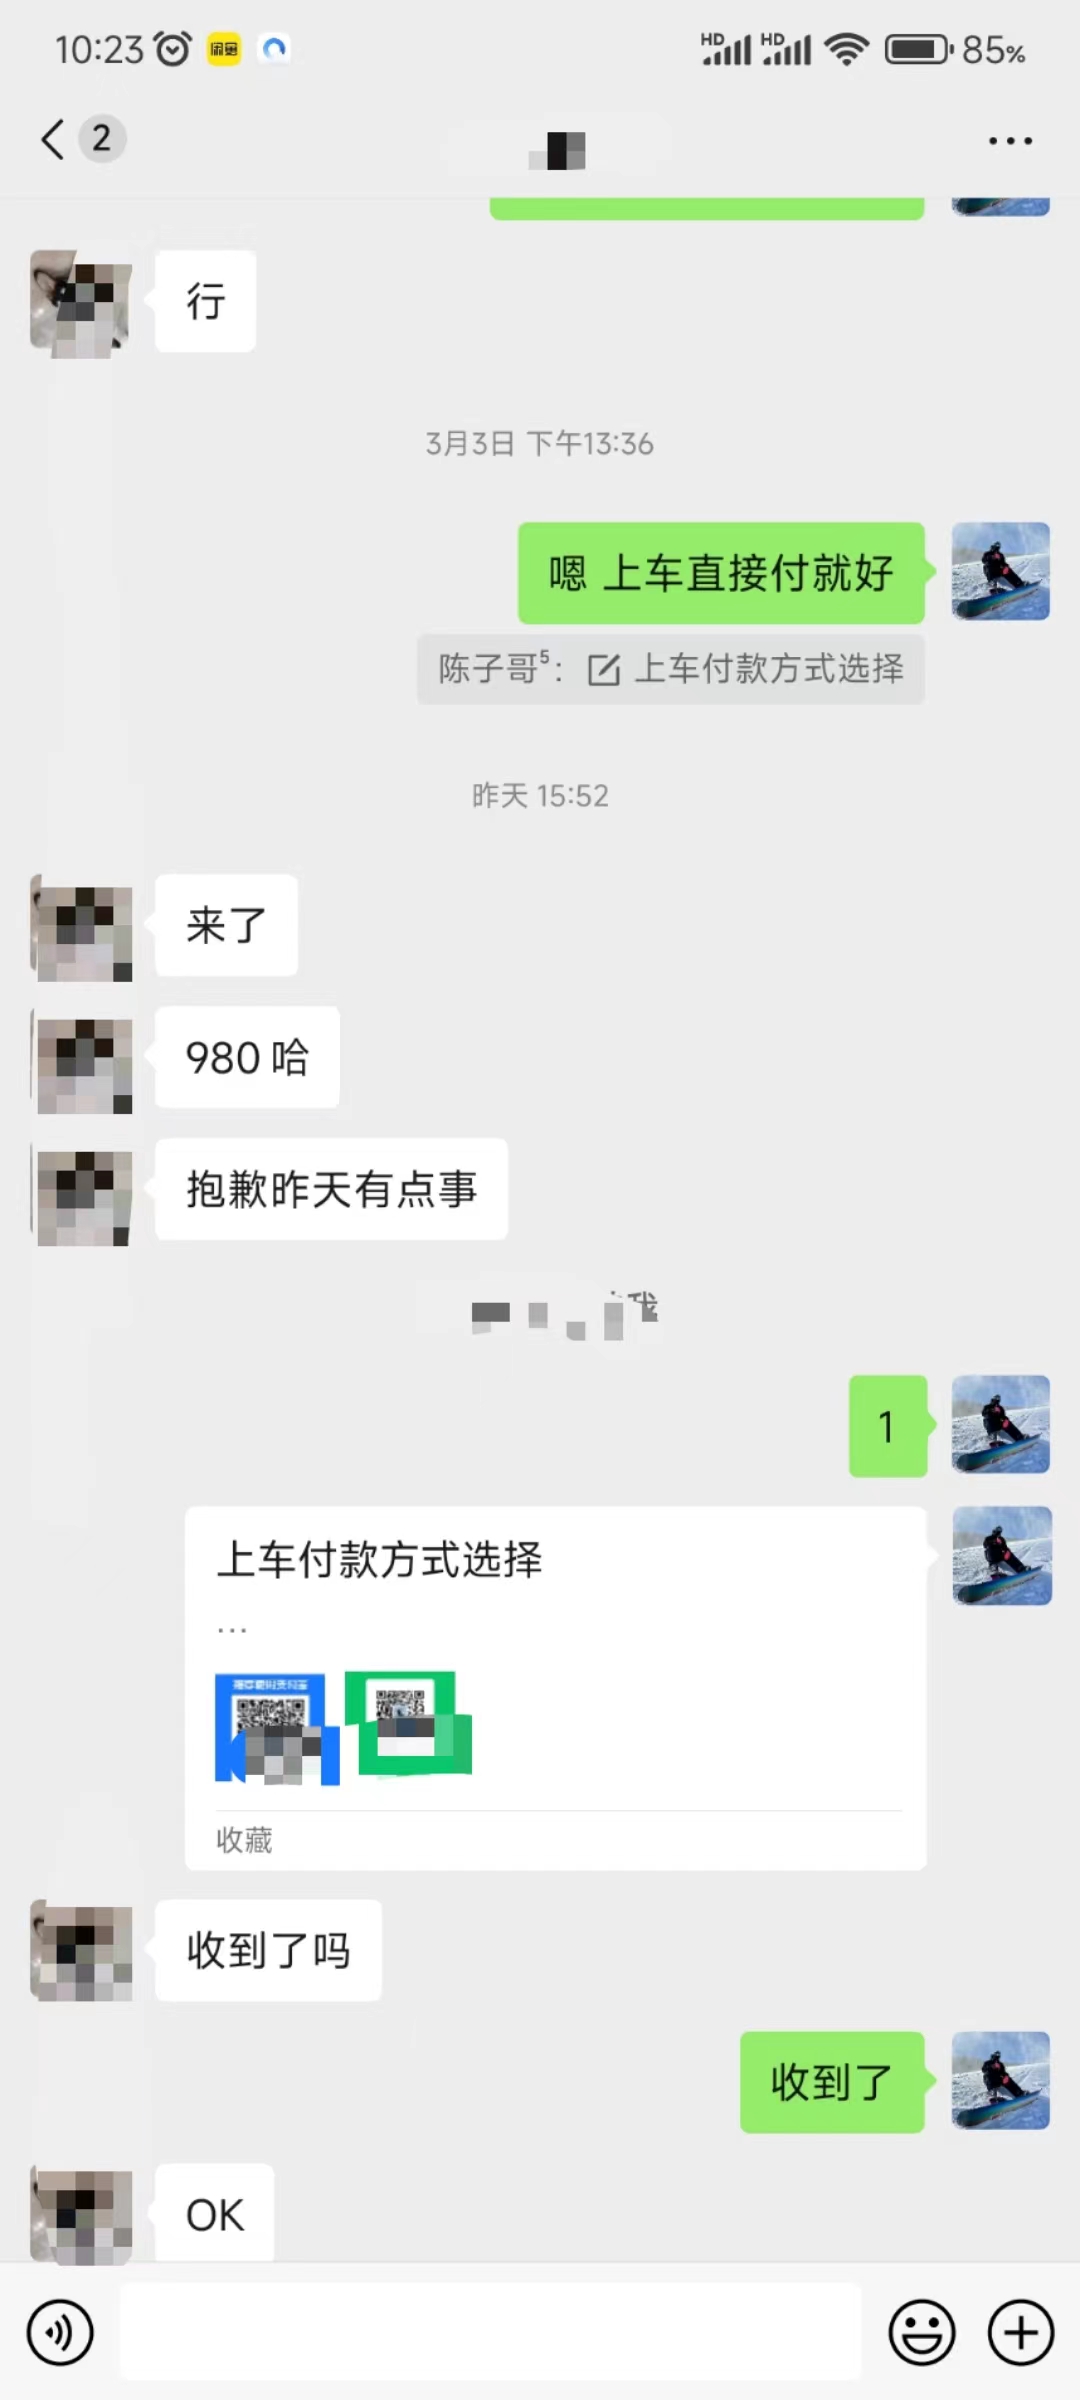 （9261期）QQ无人直播 新赛道新玩法 一天轻松500+ 腾讯官方流量扶持_80楼网创